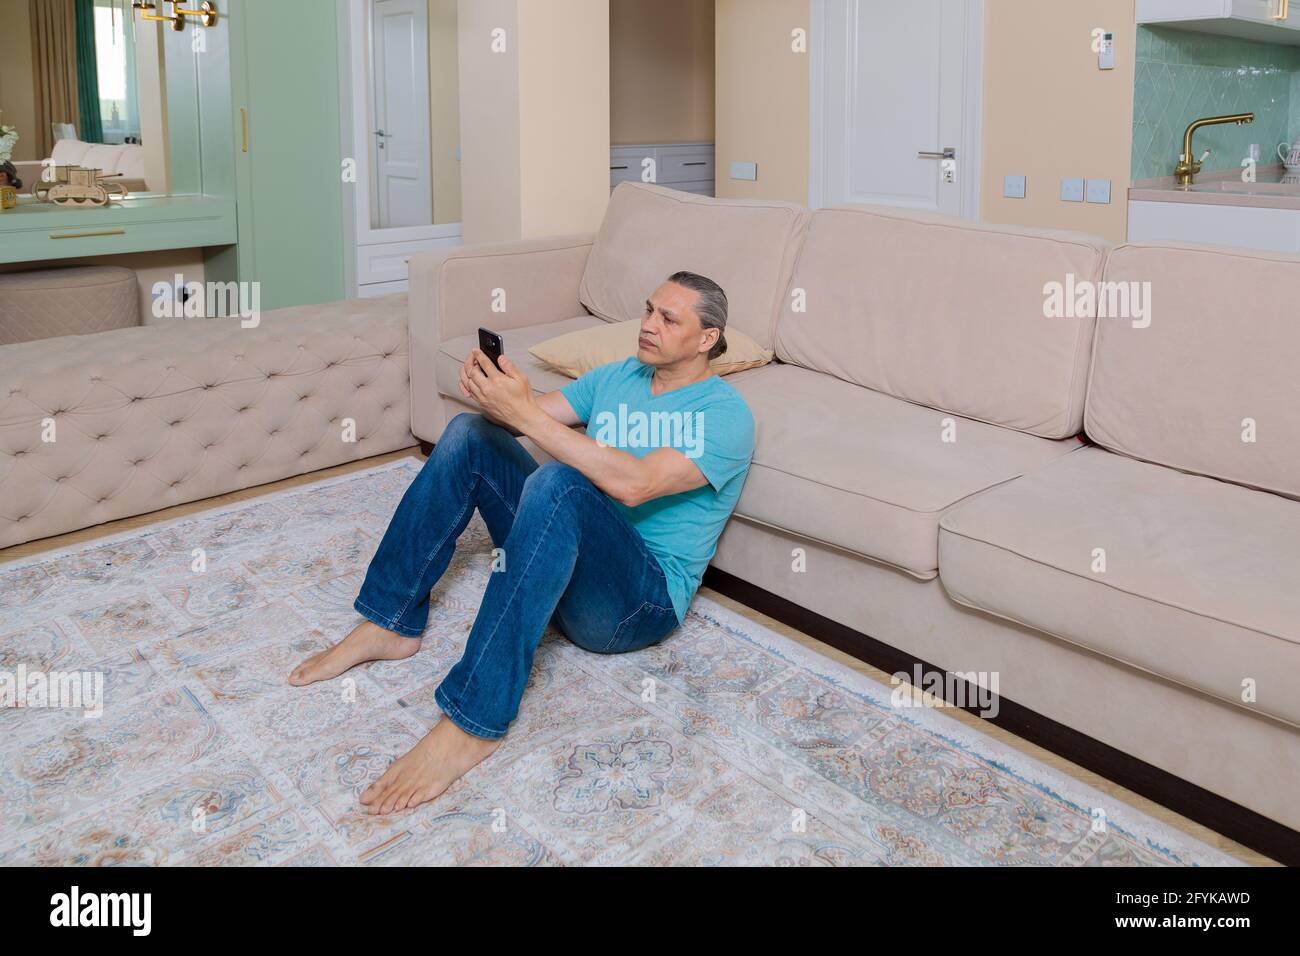 Ein erwachsener Mann durchsucht soziale Netzwerke auf einem Mobiltelefon, während er in einer Wohnung auf dem Boden sitzt. Stockfoto